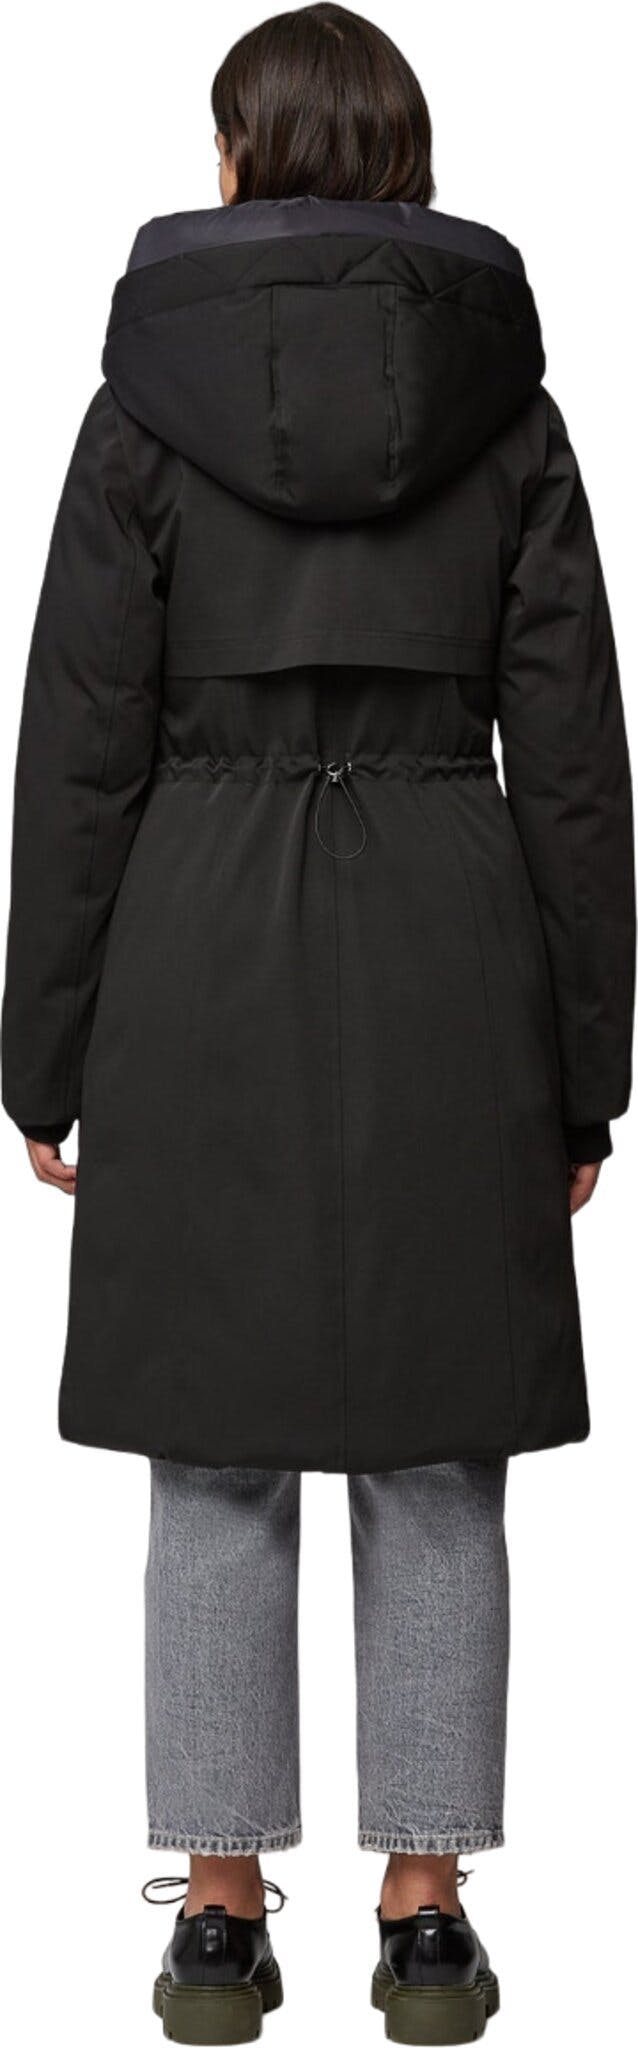 Numéro de l'image de la galerie de produits 2 pour le produit Manteau semi-ajusté en duvet classique avec capuchon Samara-TD - Femme